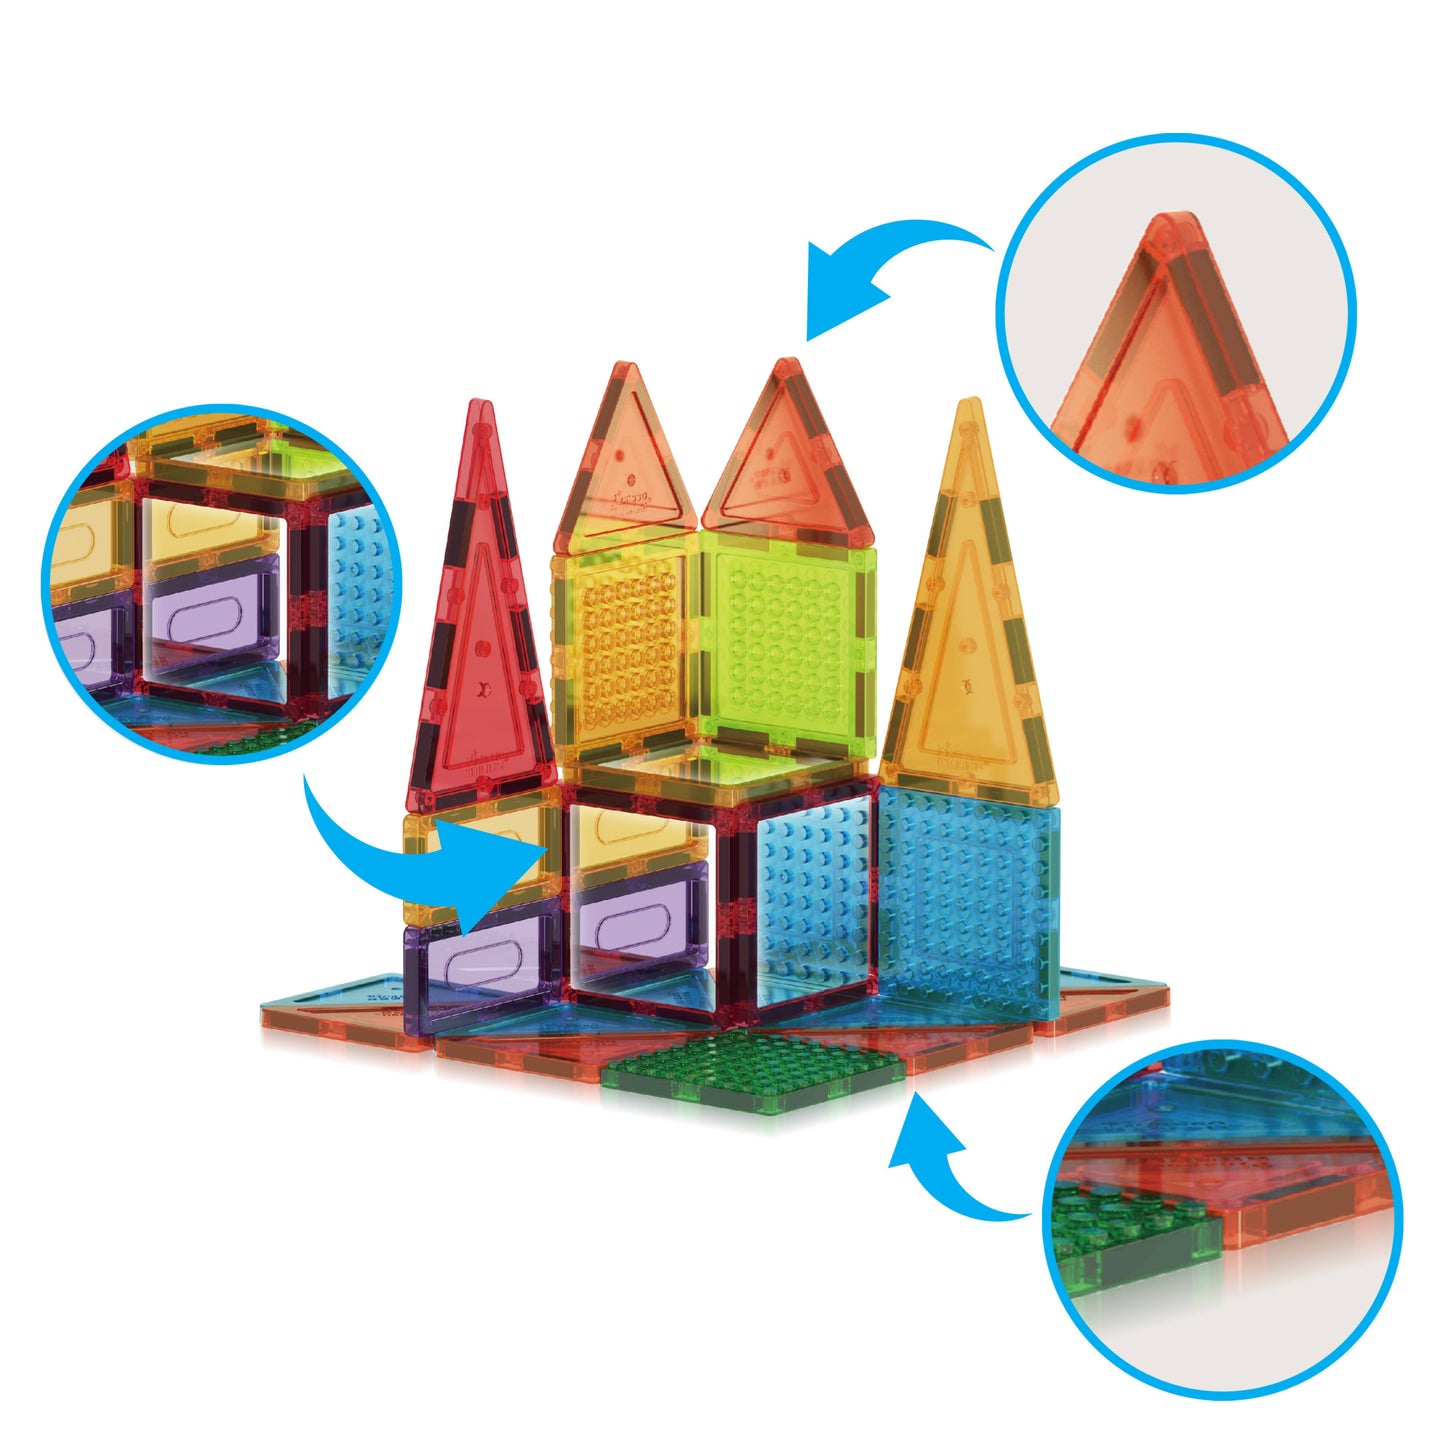 63 Piece Magnetic Building Tiles Toy Set